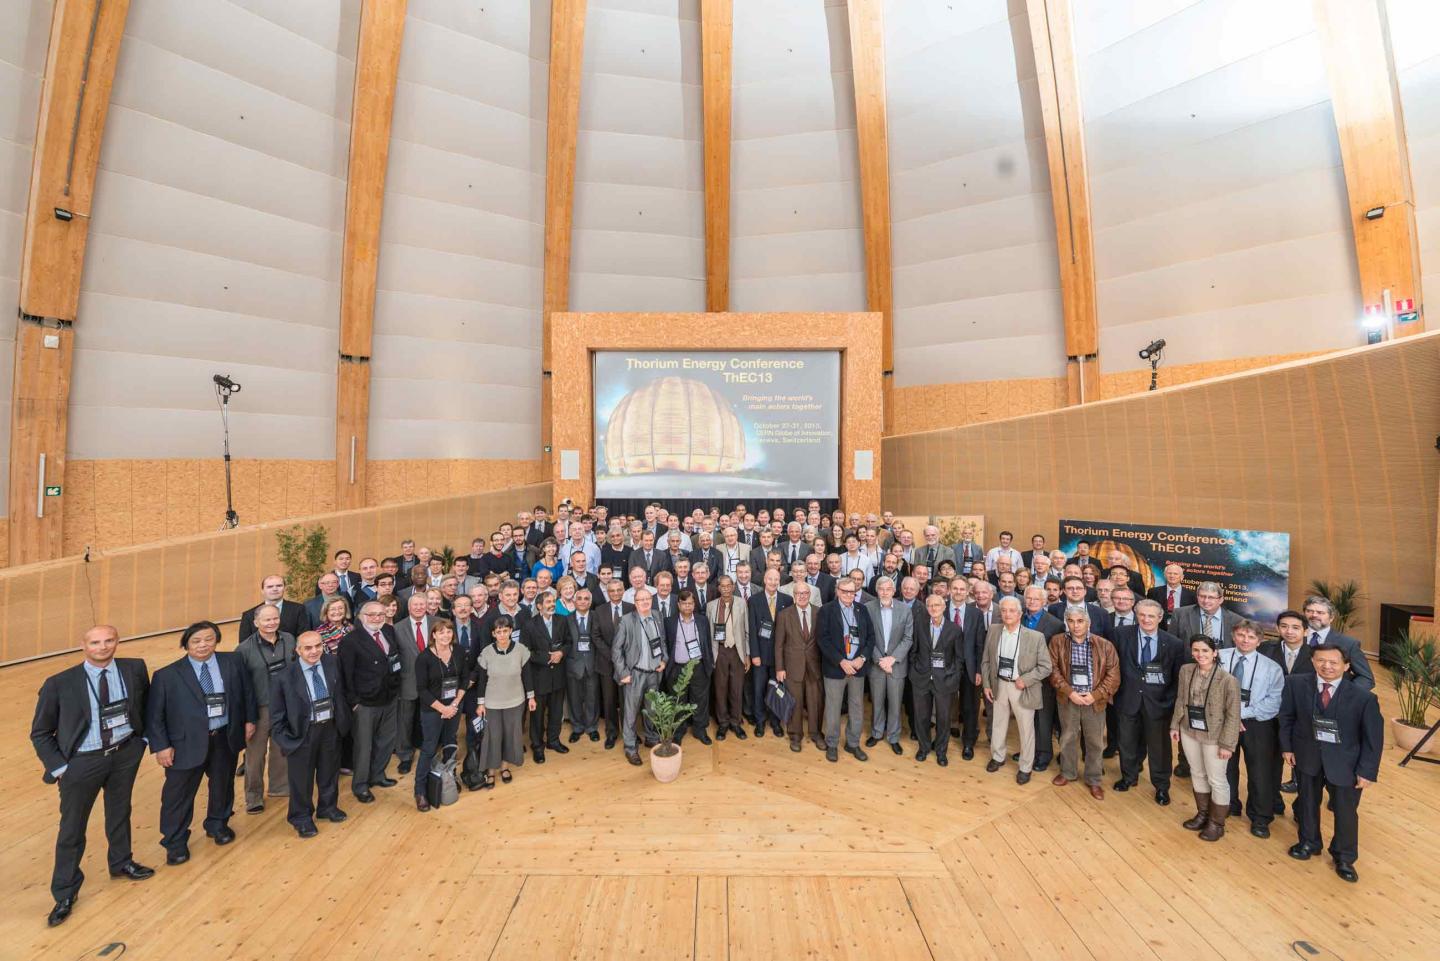 CERN hosts international conference on thorium technologies CERN